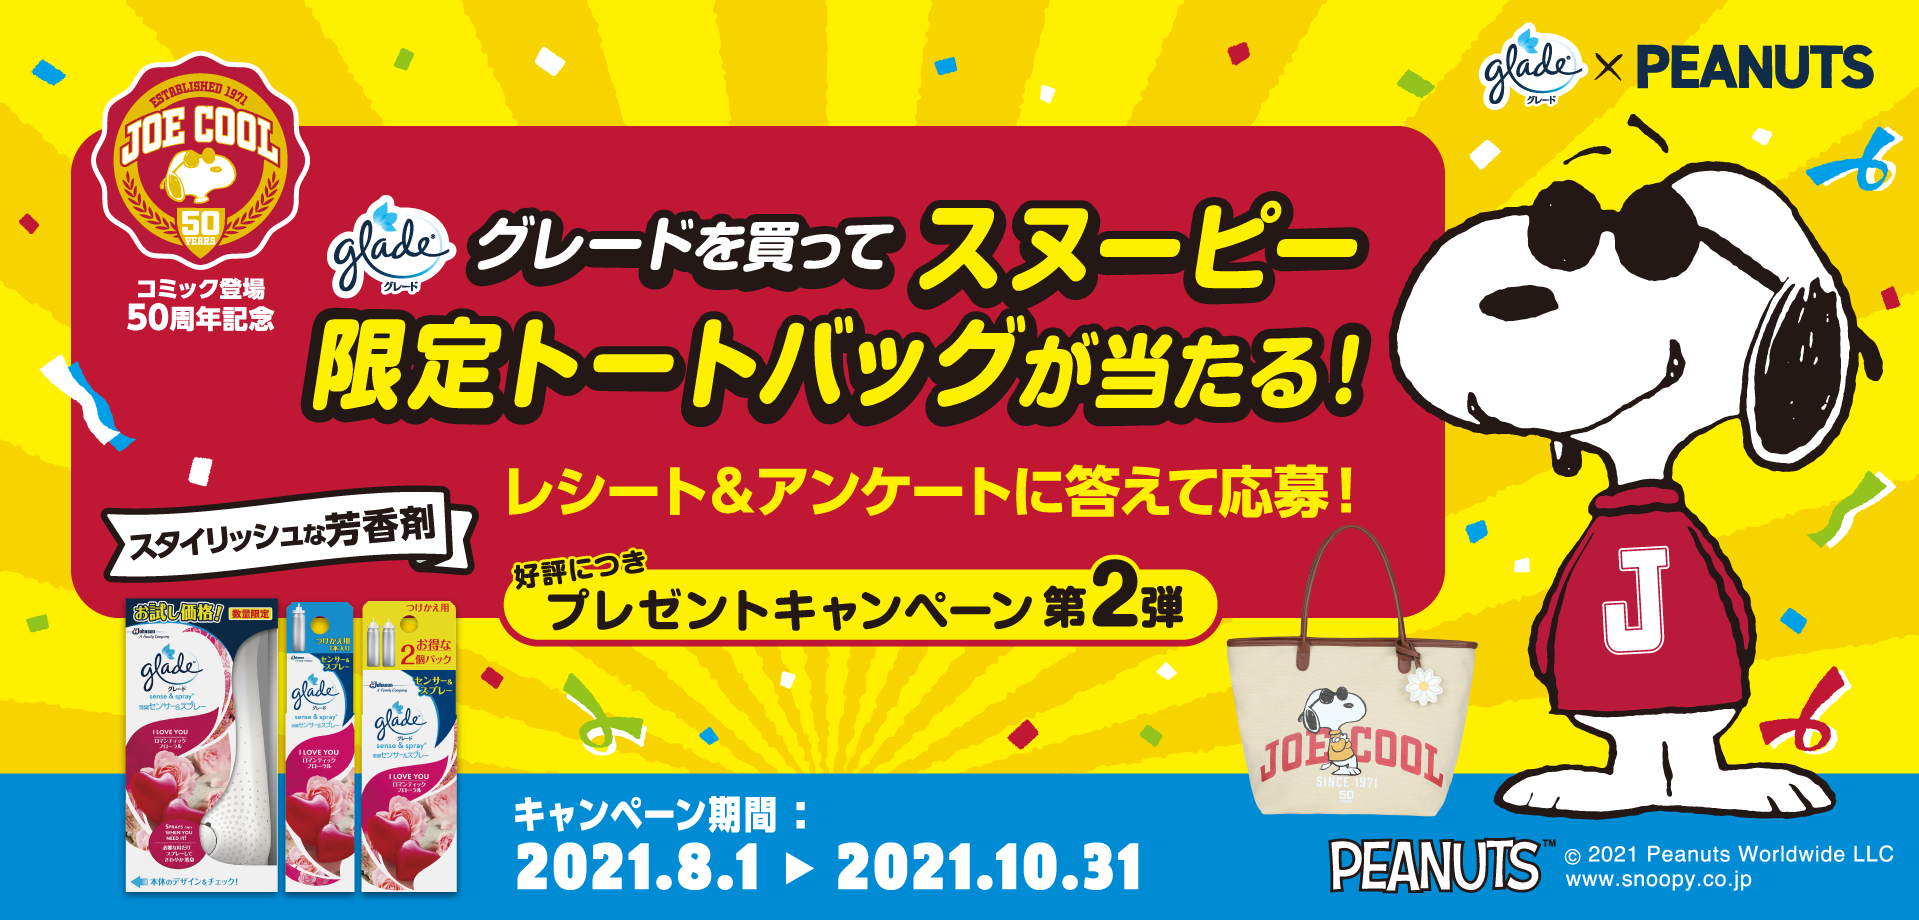 グレードを買ってスヌーピー限定トートバッグが当たる！レシート＆アンケートに答えて応募！好評につきプレゼントキャンペーン第2弾 PEANUTS(TM)　(C)2021 Peanuts Worldwide LLC　www.snoopy.co.jp